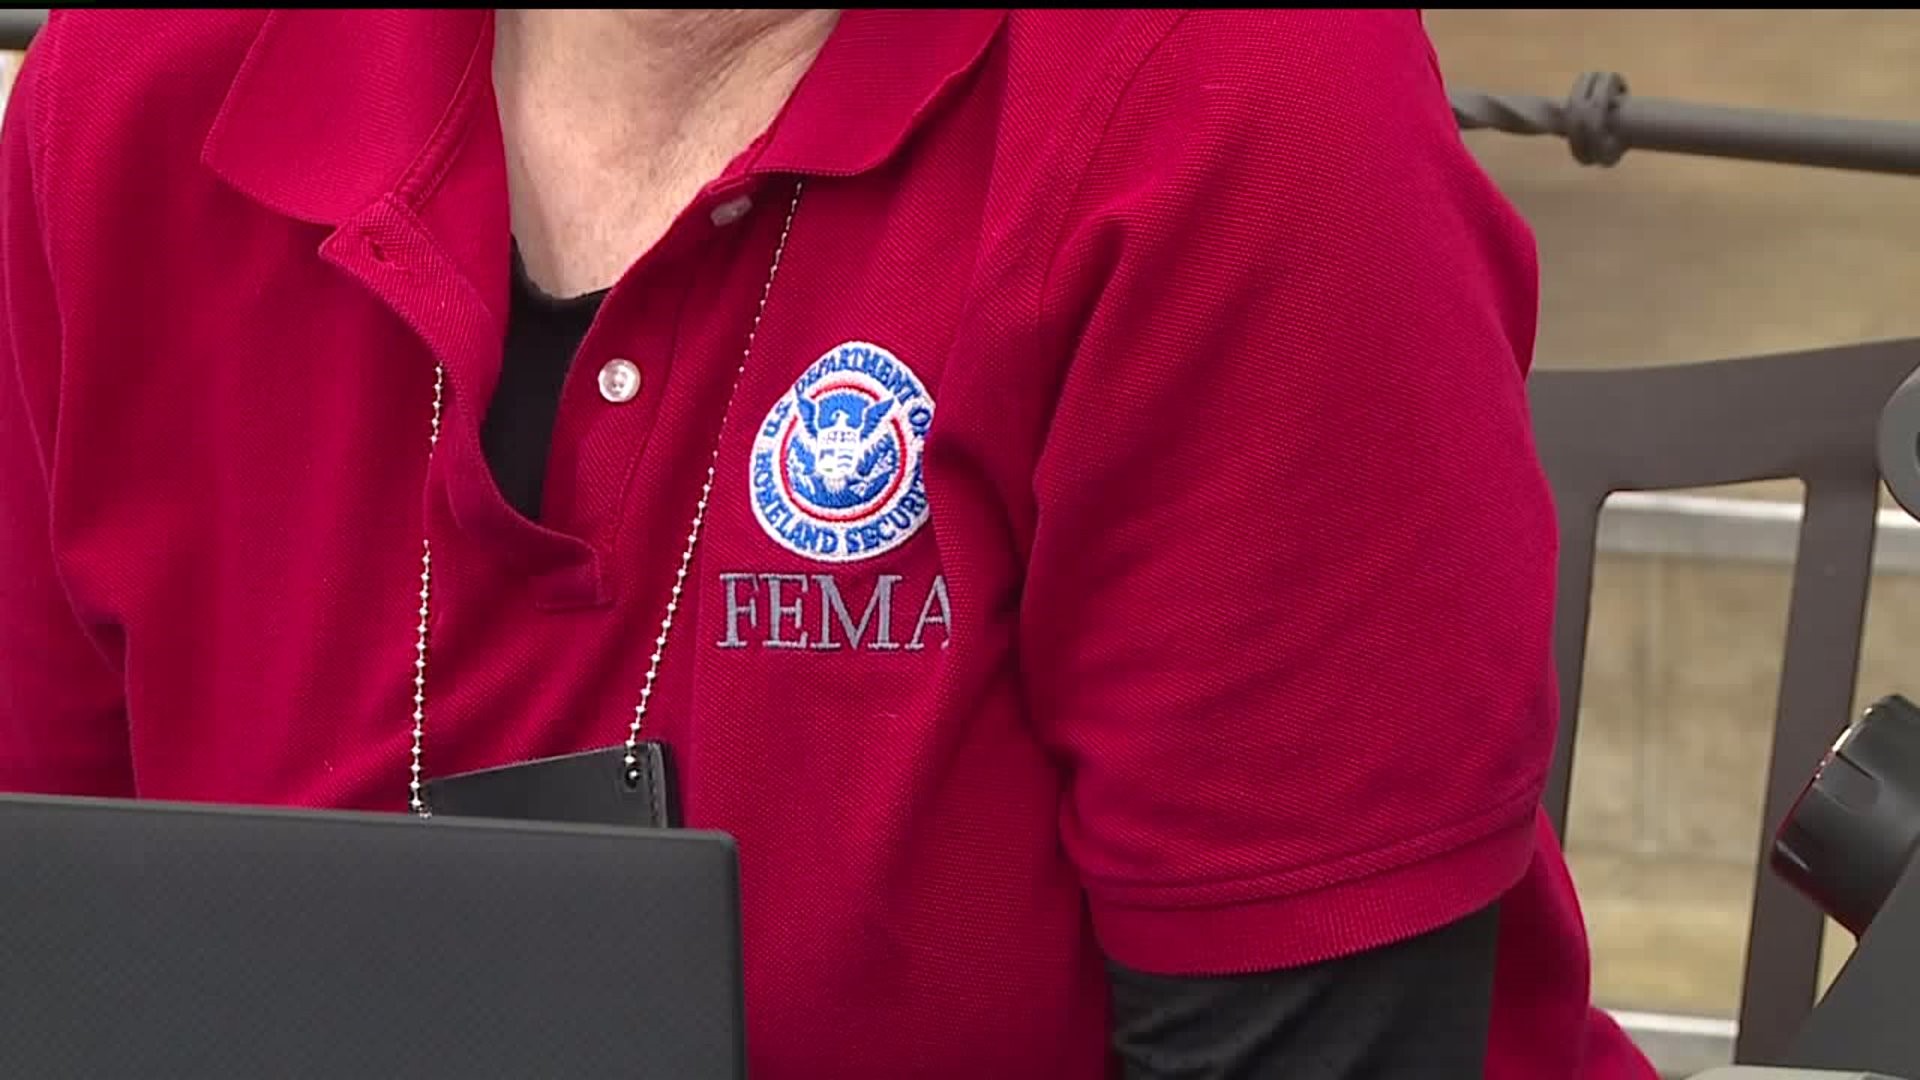 FEMA sets up at ACE Hardware